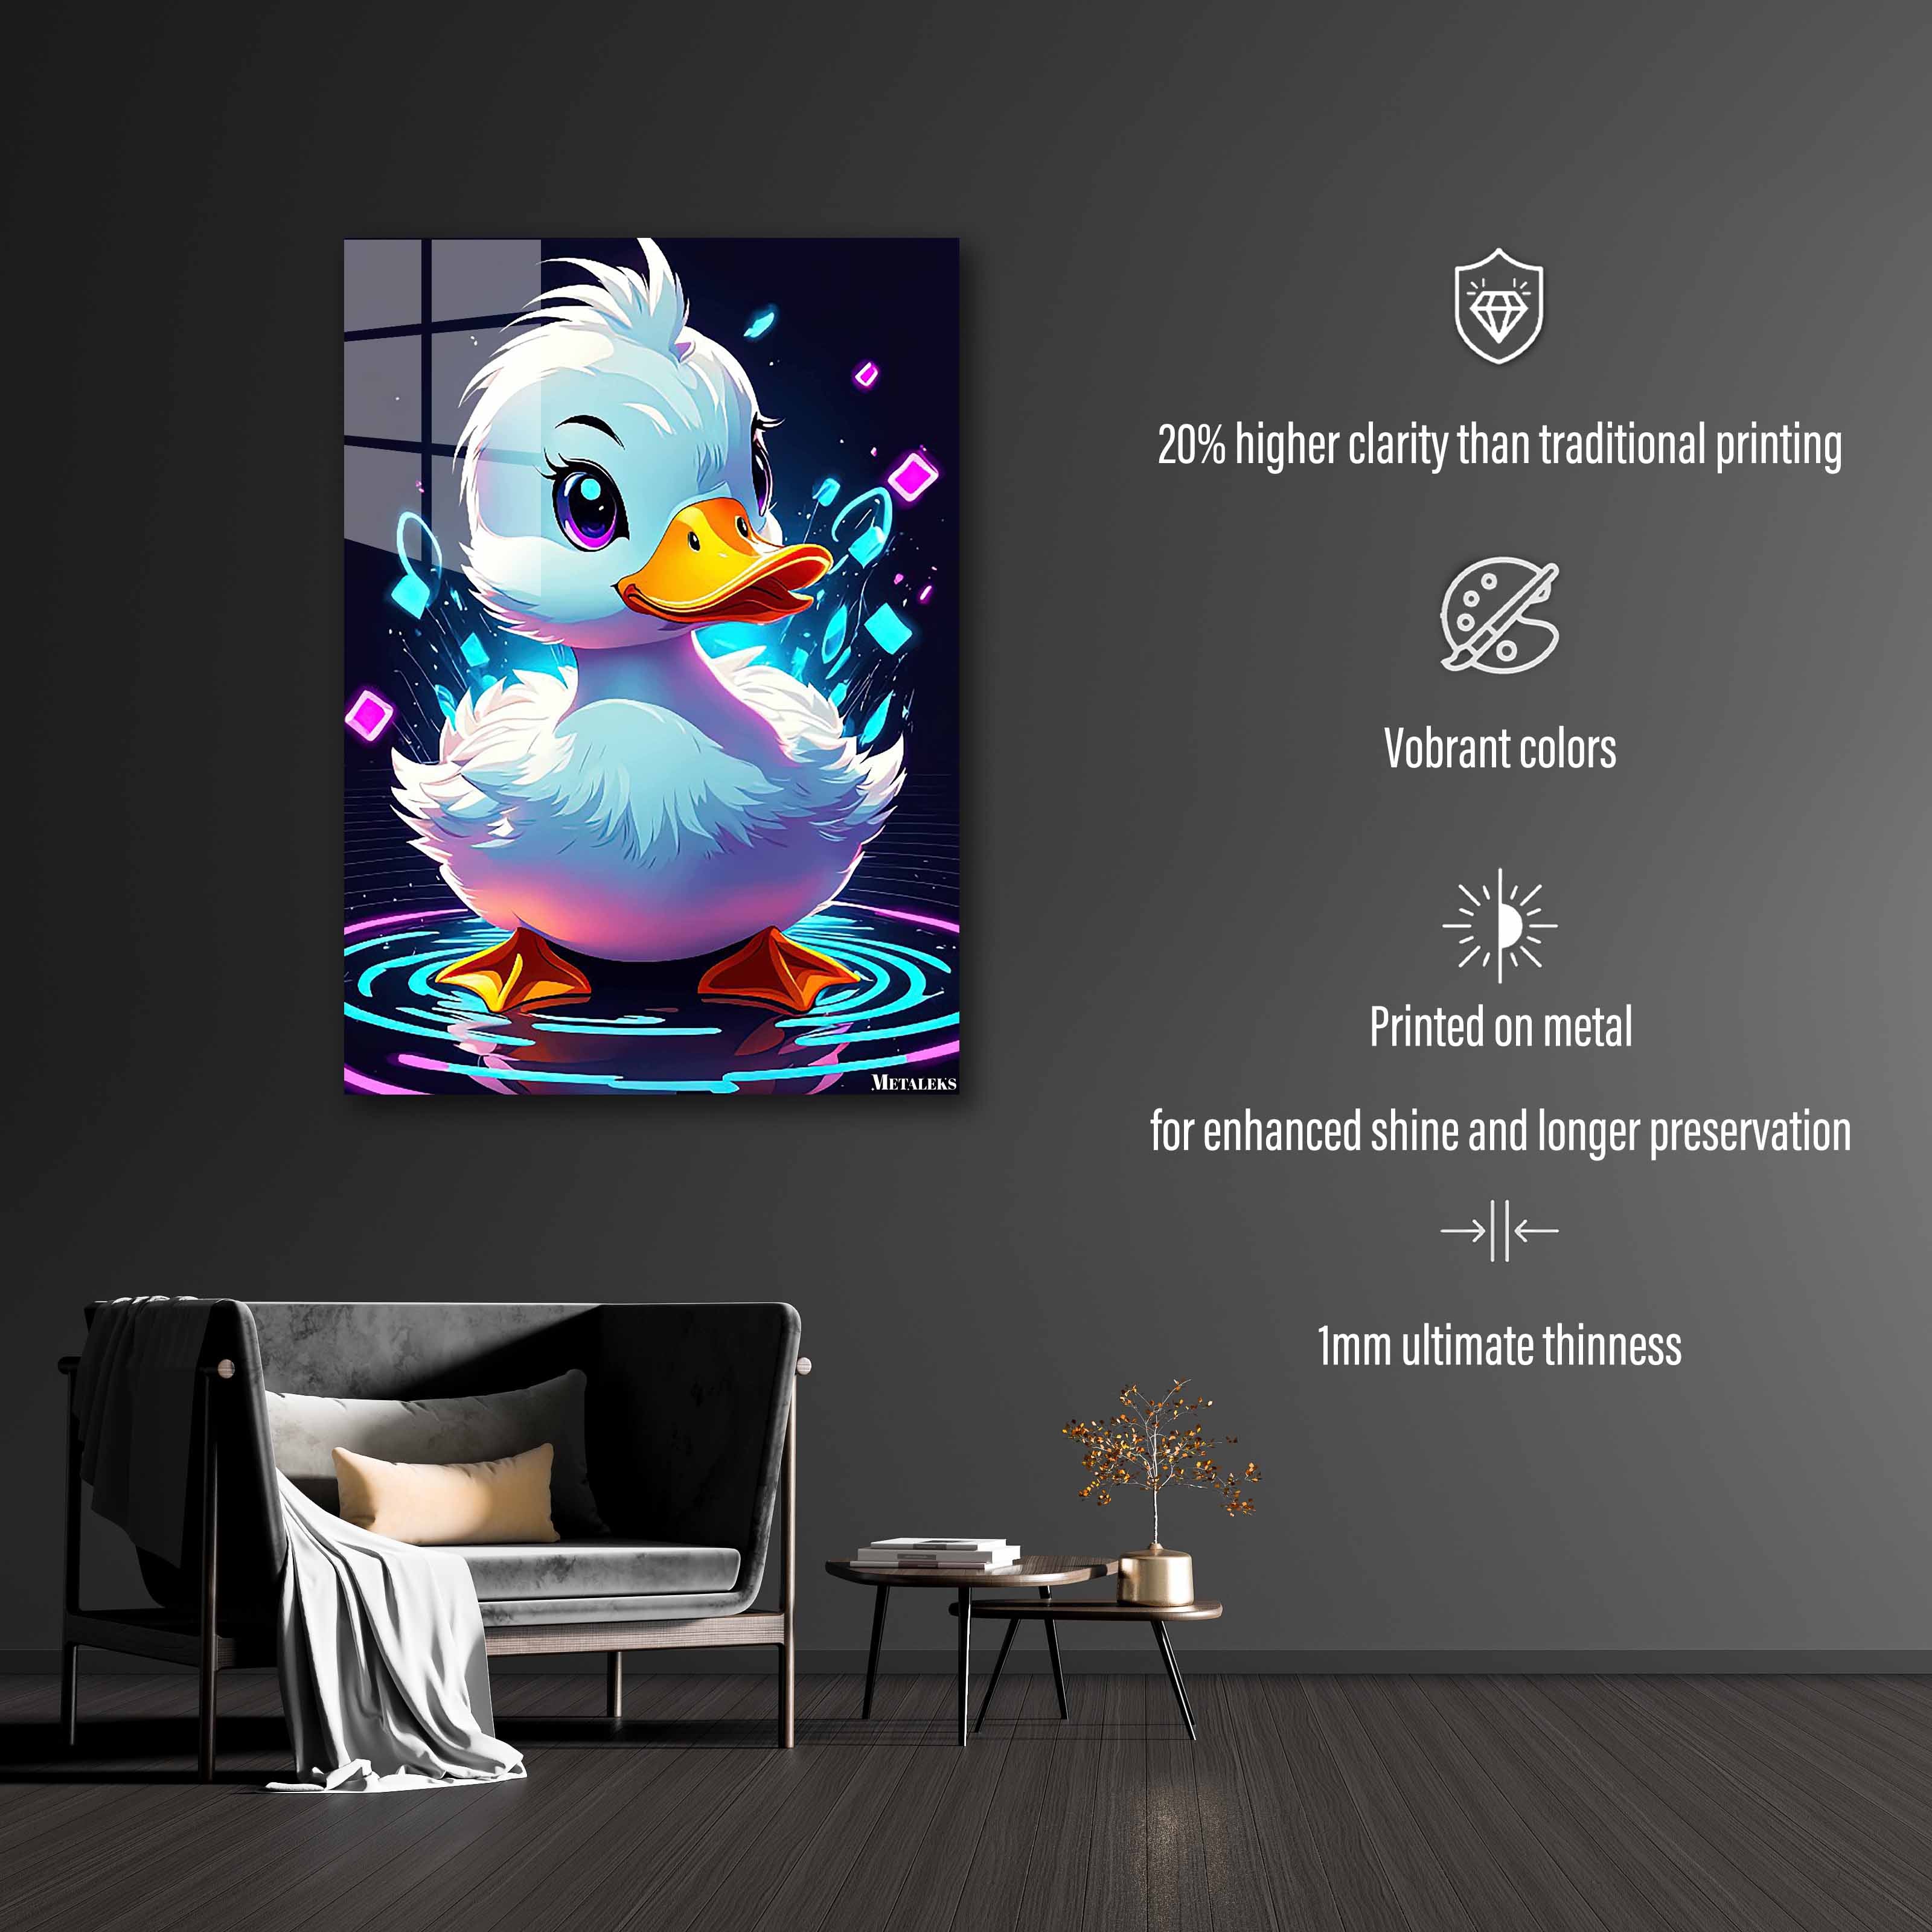 Mini Duck-designed by @Sheshh